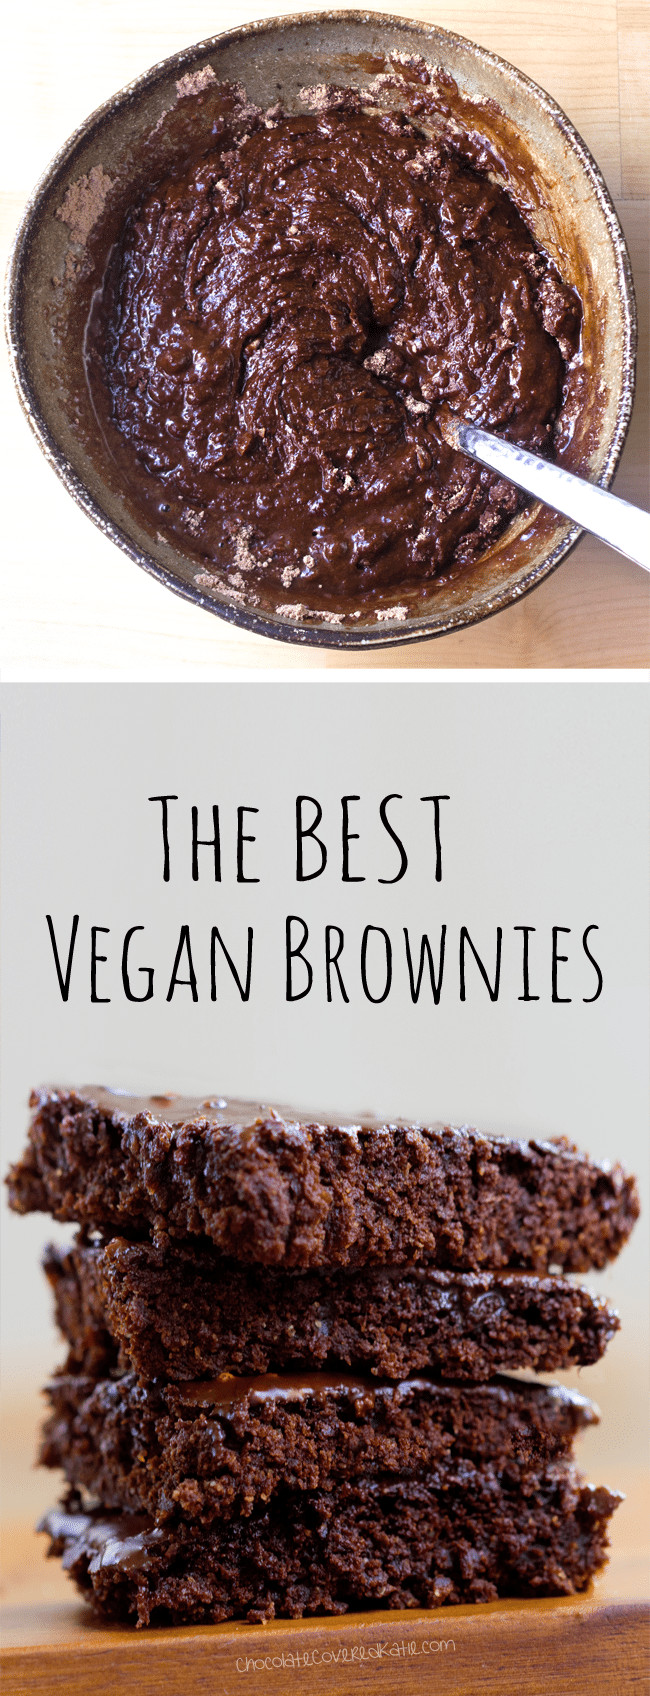 Best Vegan Brownies
 The Best Vegan Brownies